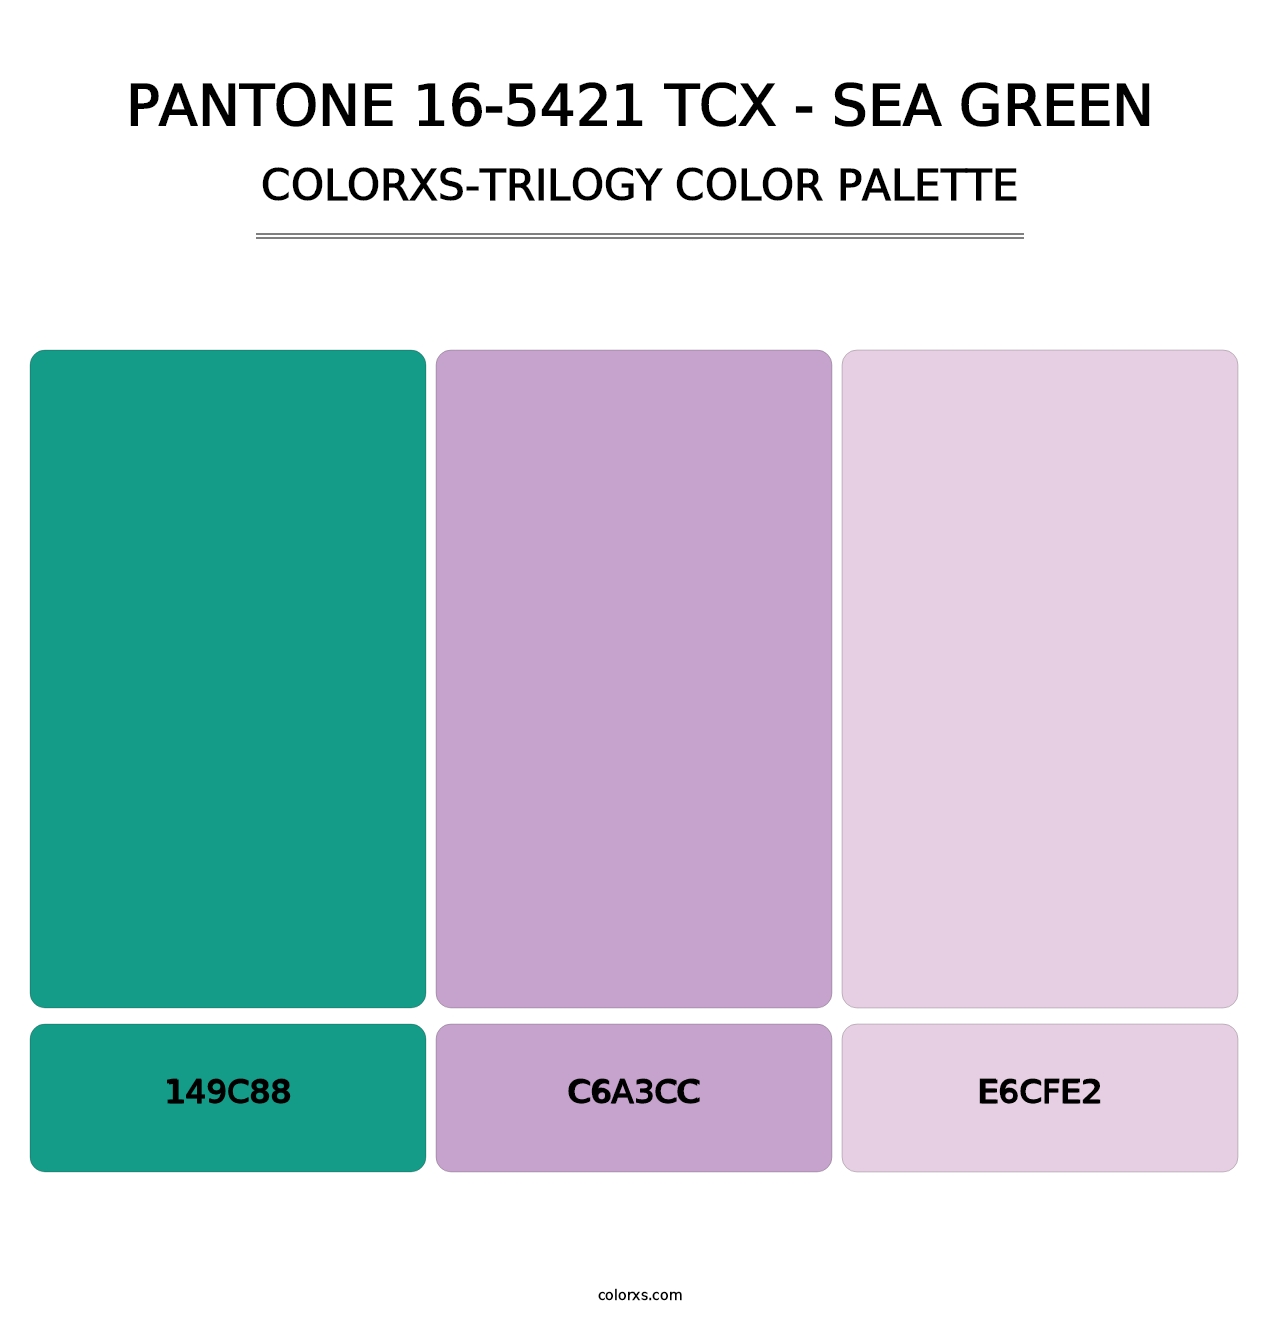 PANTONE 16-5421 TCX - Sea Green - Colorxs Trilogy Palette